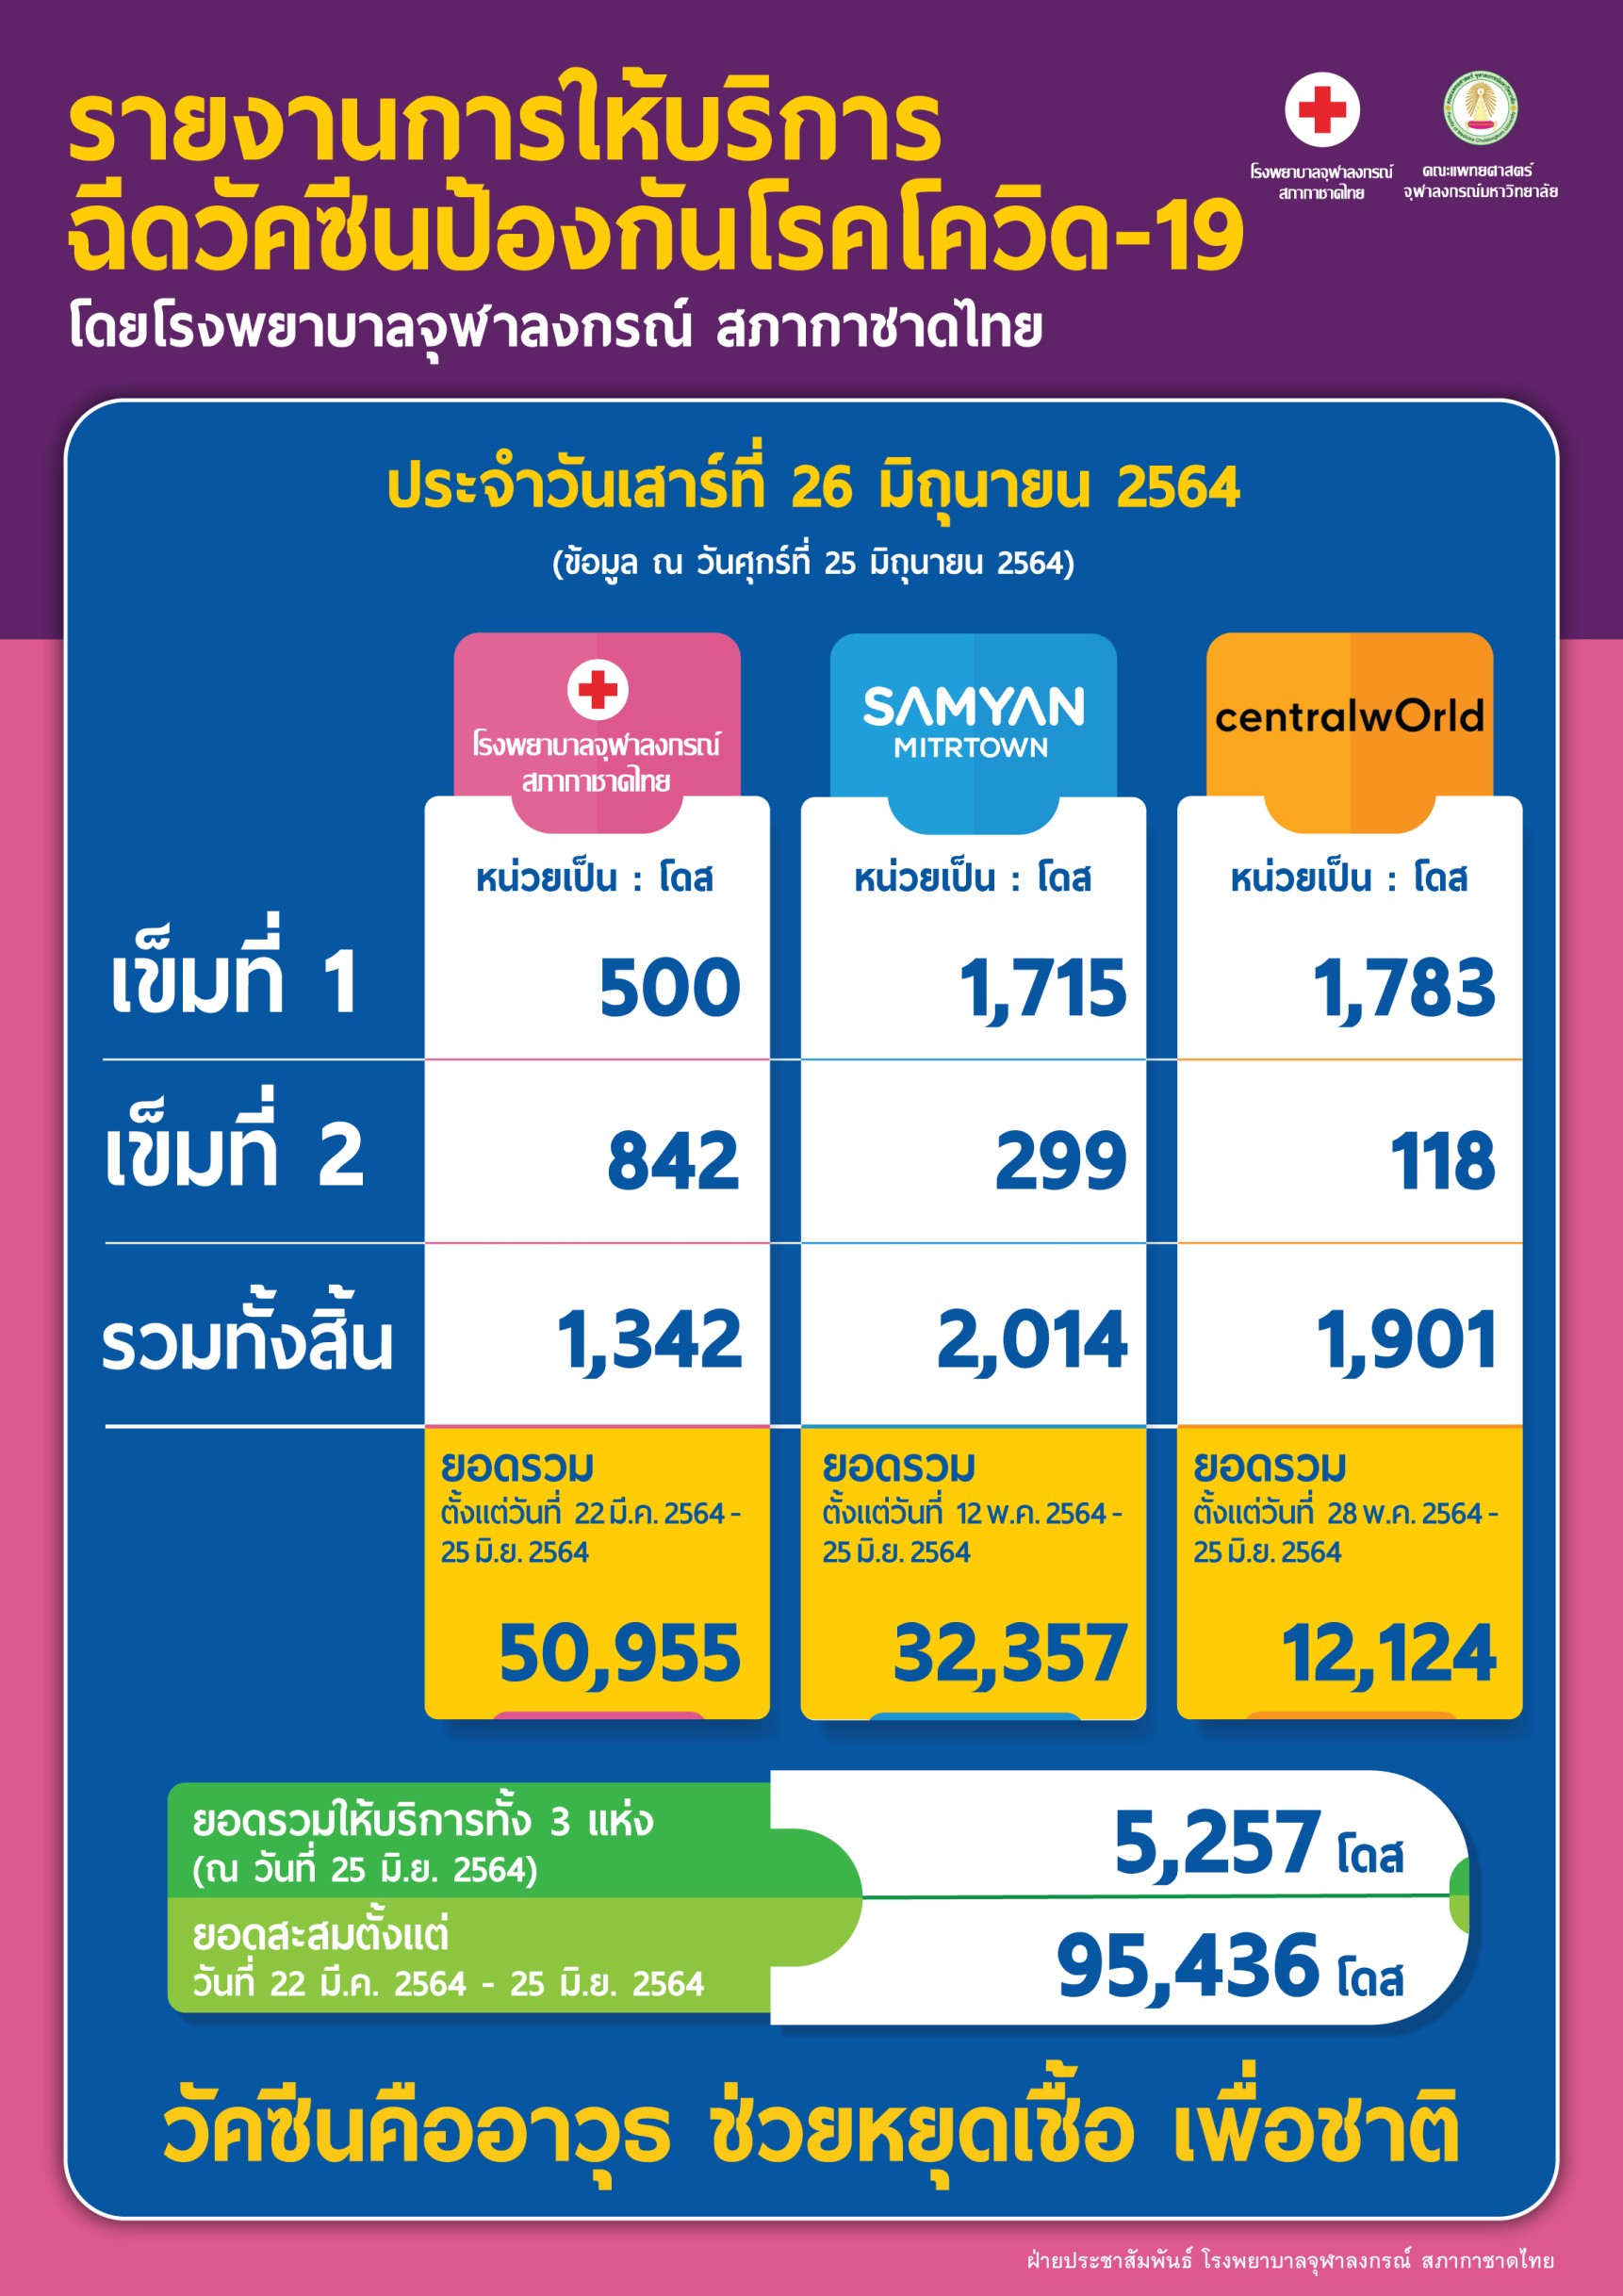 รายงานการให้บริการฉีดวัคซีนป้องกันโรคโควิด-19โดยโรงพยาบาลจุฬาลงกรณ์ สภากาชาดไทยประจำวันเสาร์ที่ 26 มิถุนายน 2564